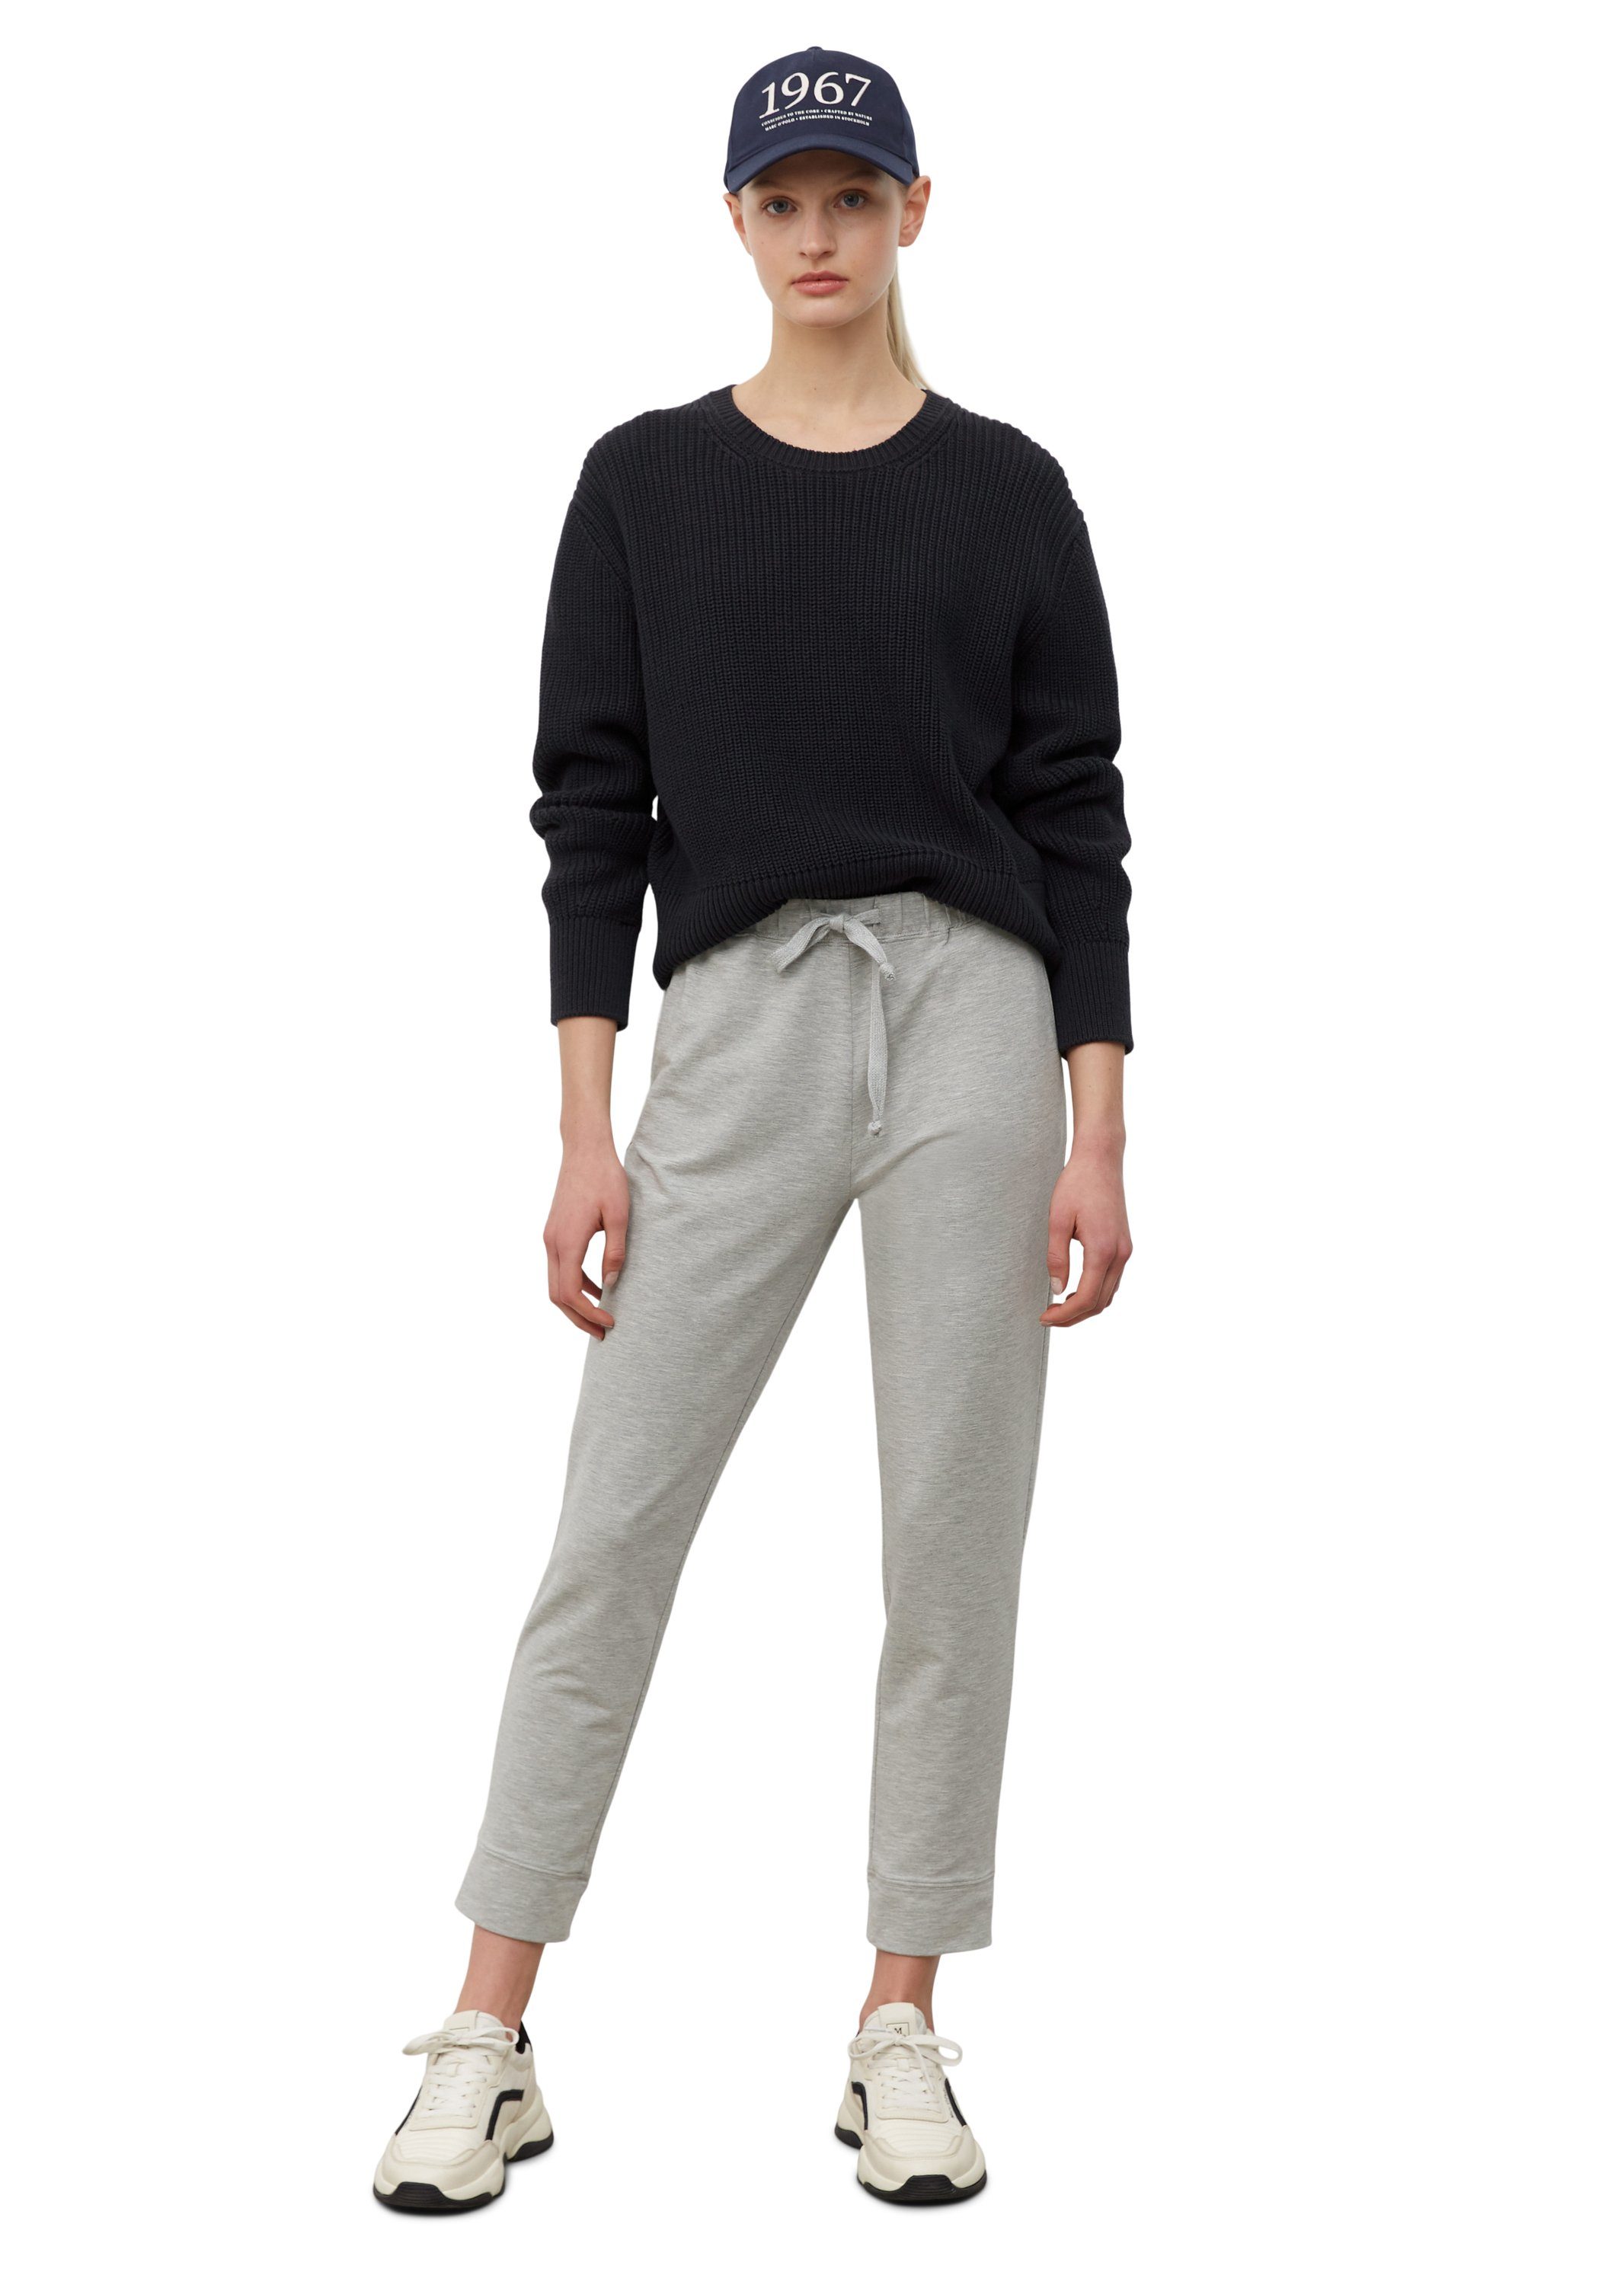 Damen Hosen Marc O'Polo Jerseyhose aus supersoftem Modal-Baumwolle-Mix